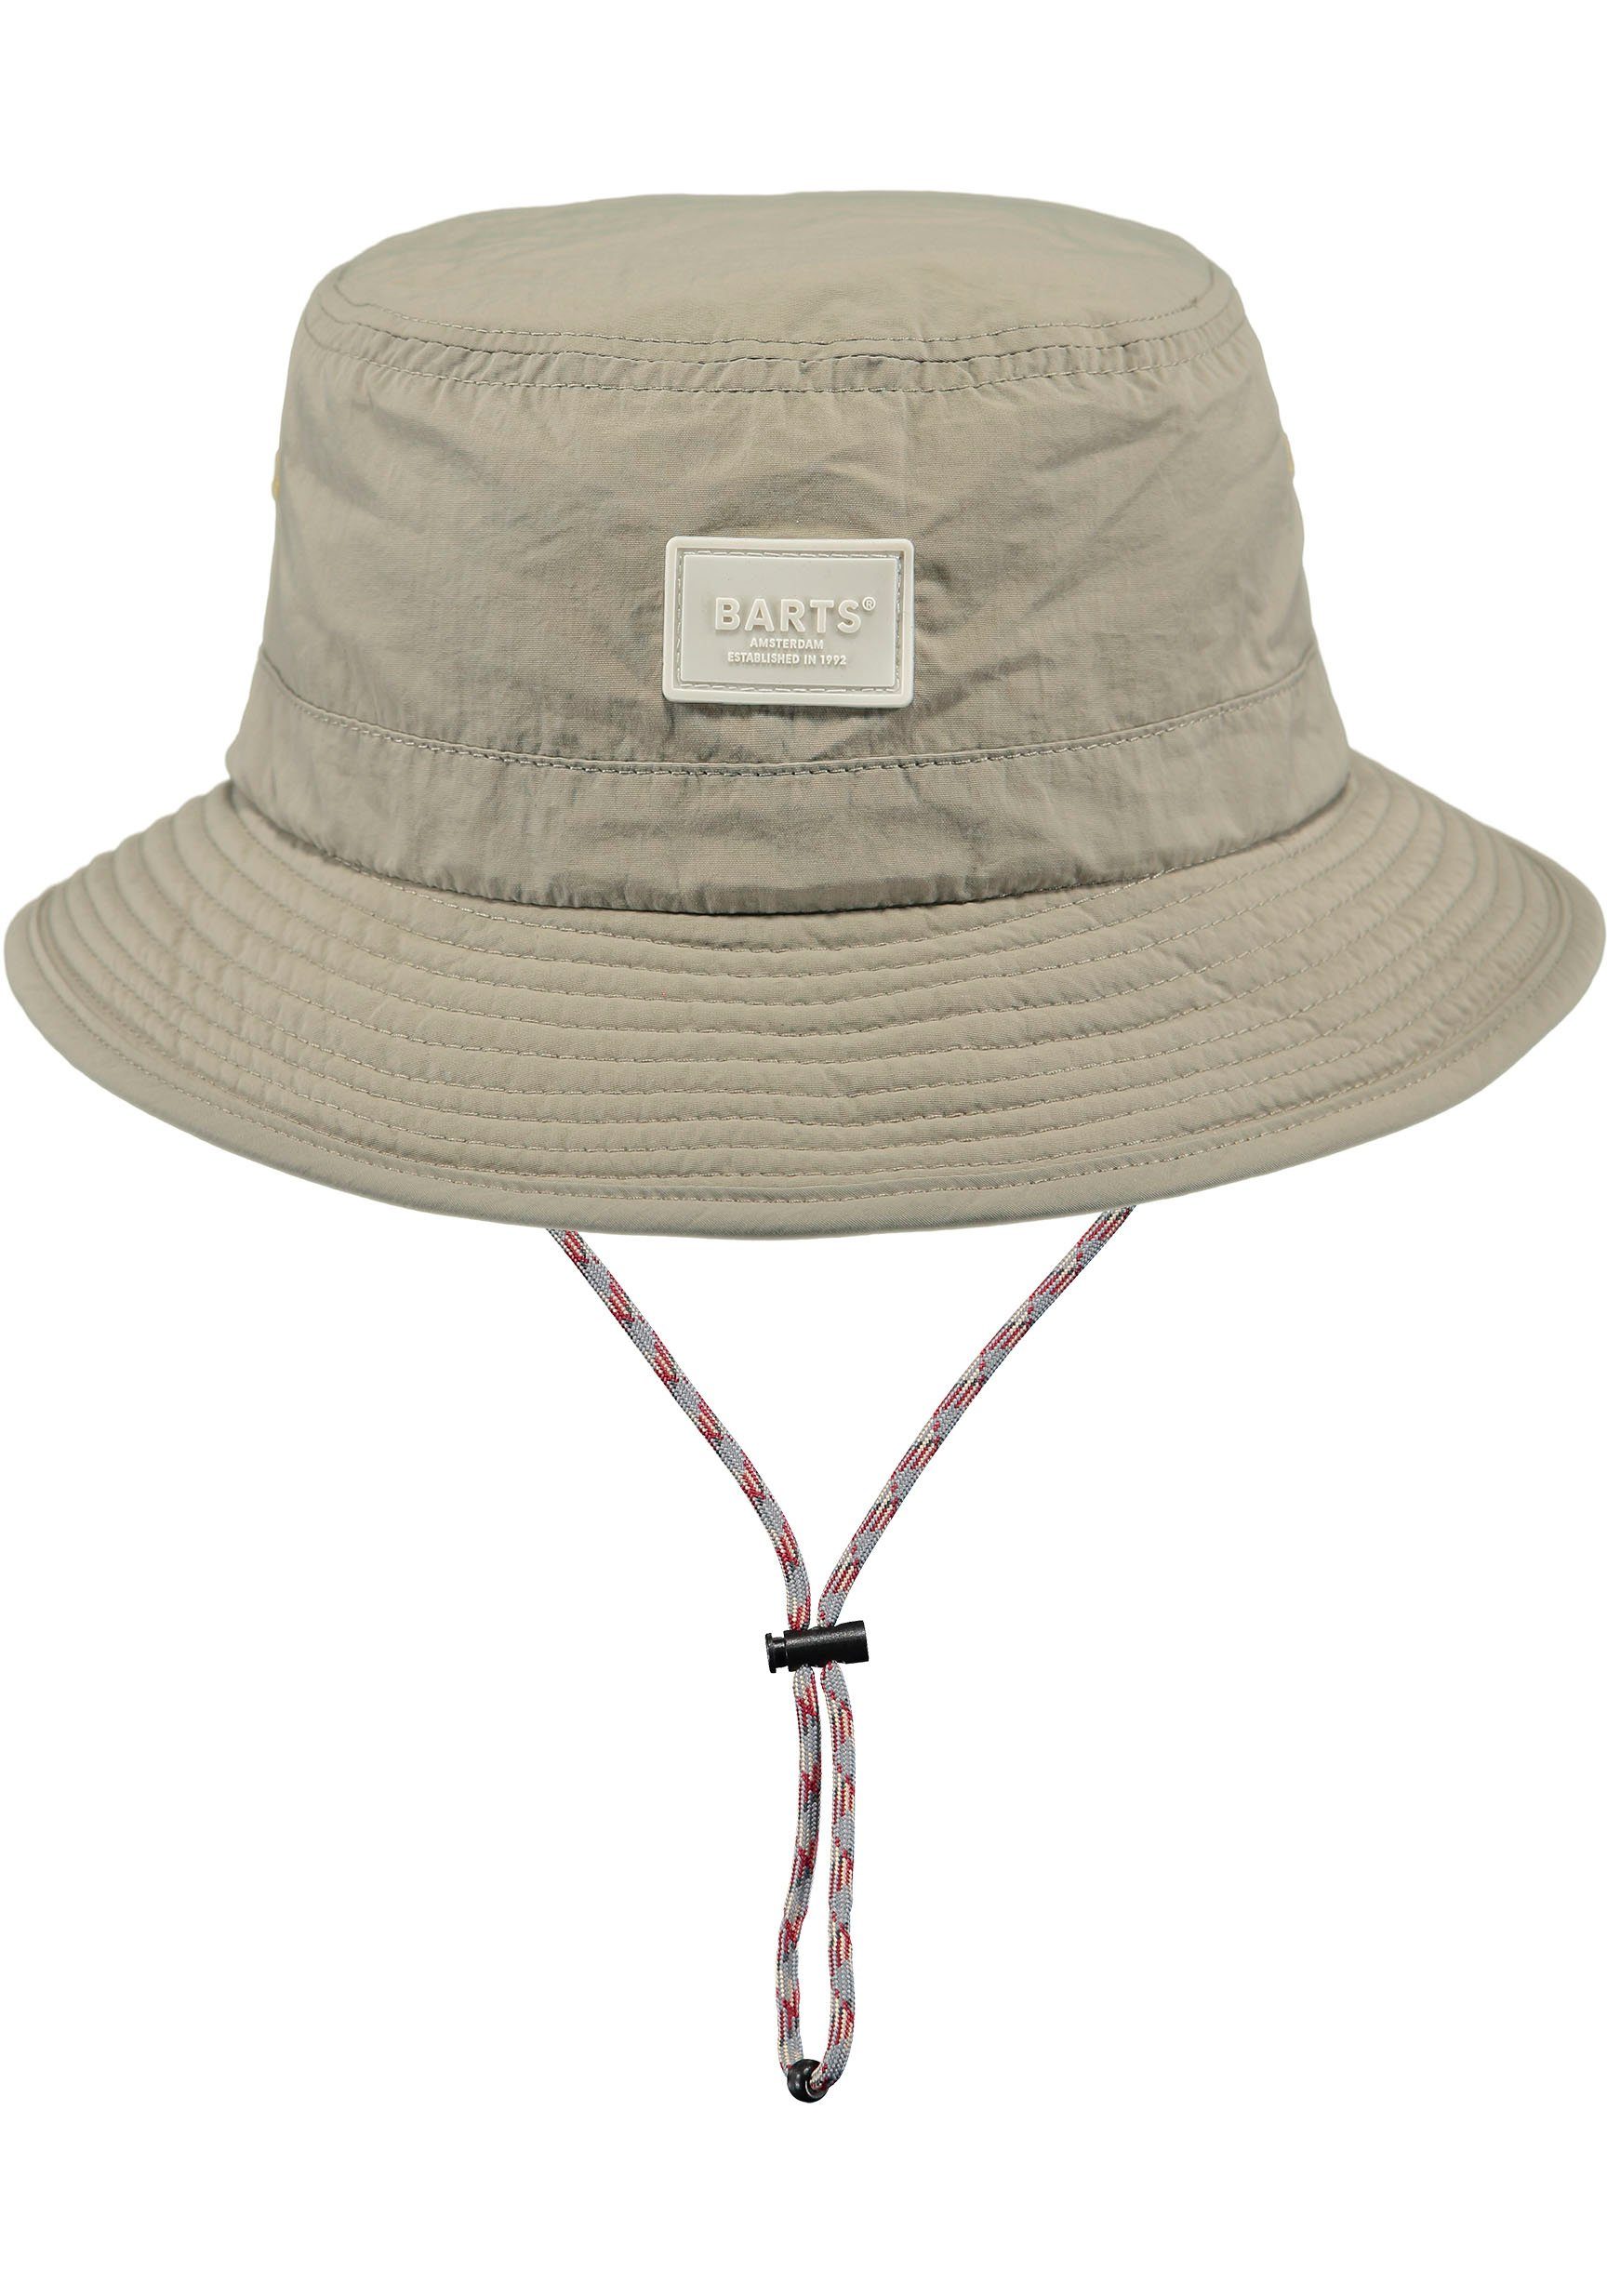 Hutband mit natur durch verstellbare Passform innenliegendes Barts Fischerhut Bindeband,